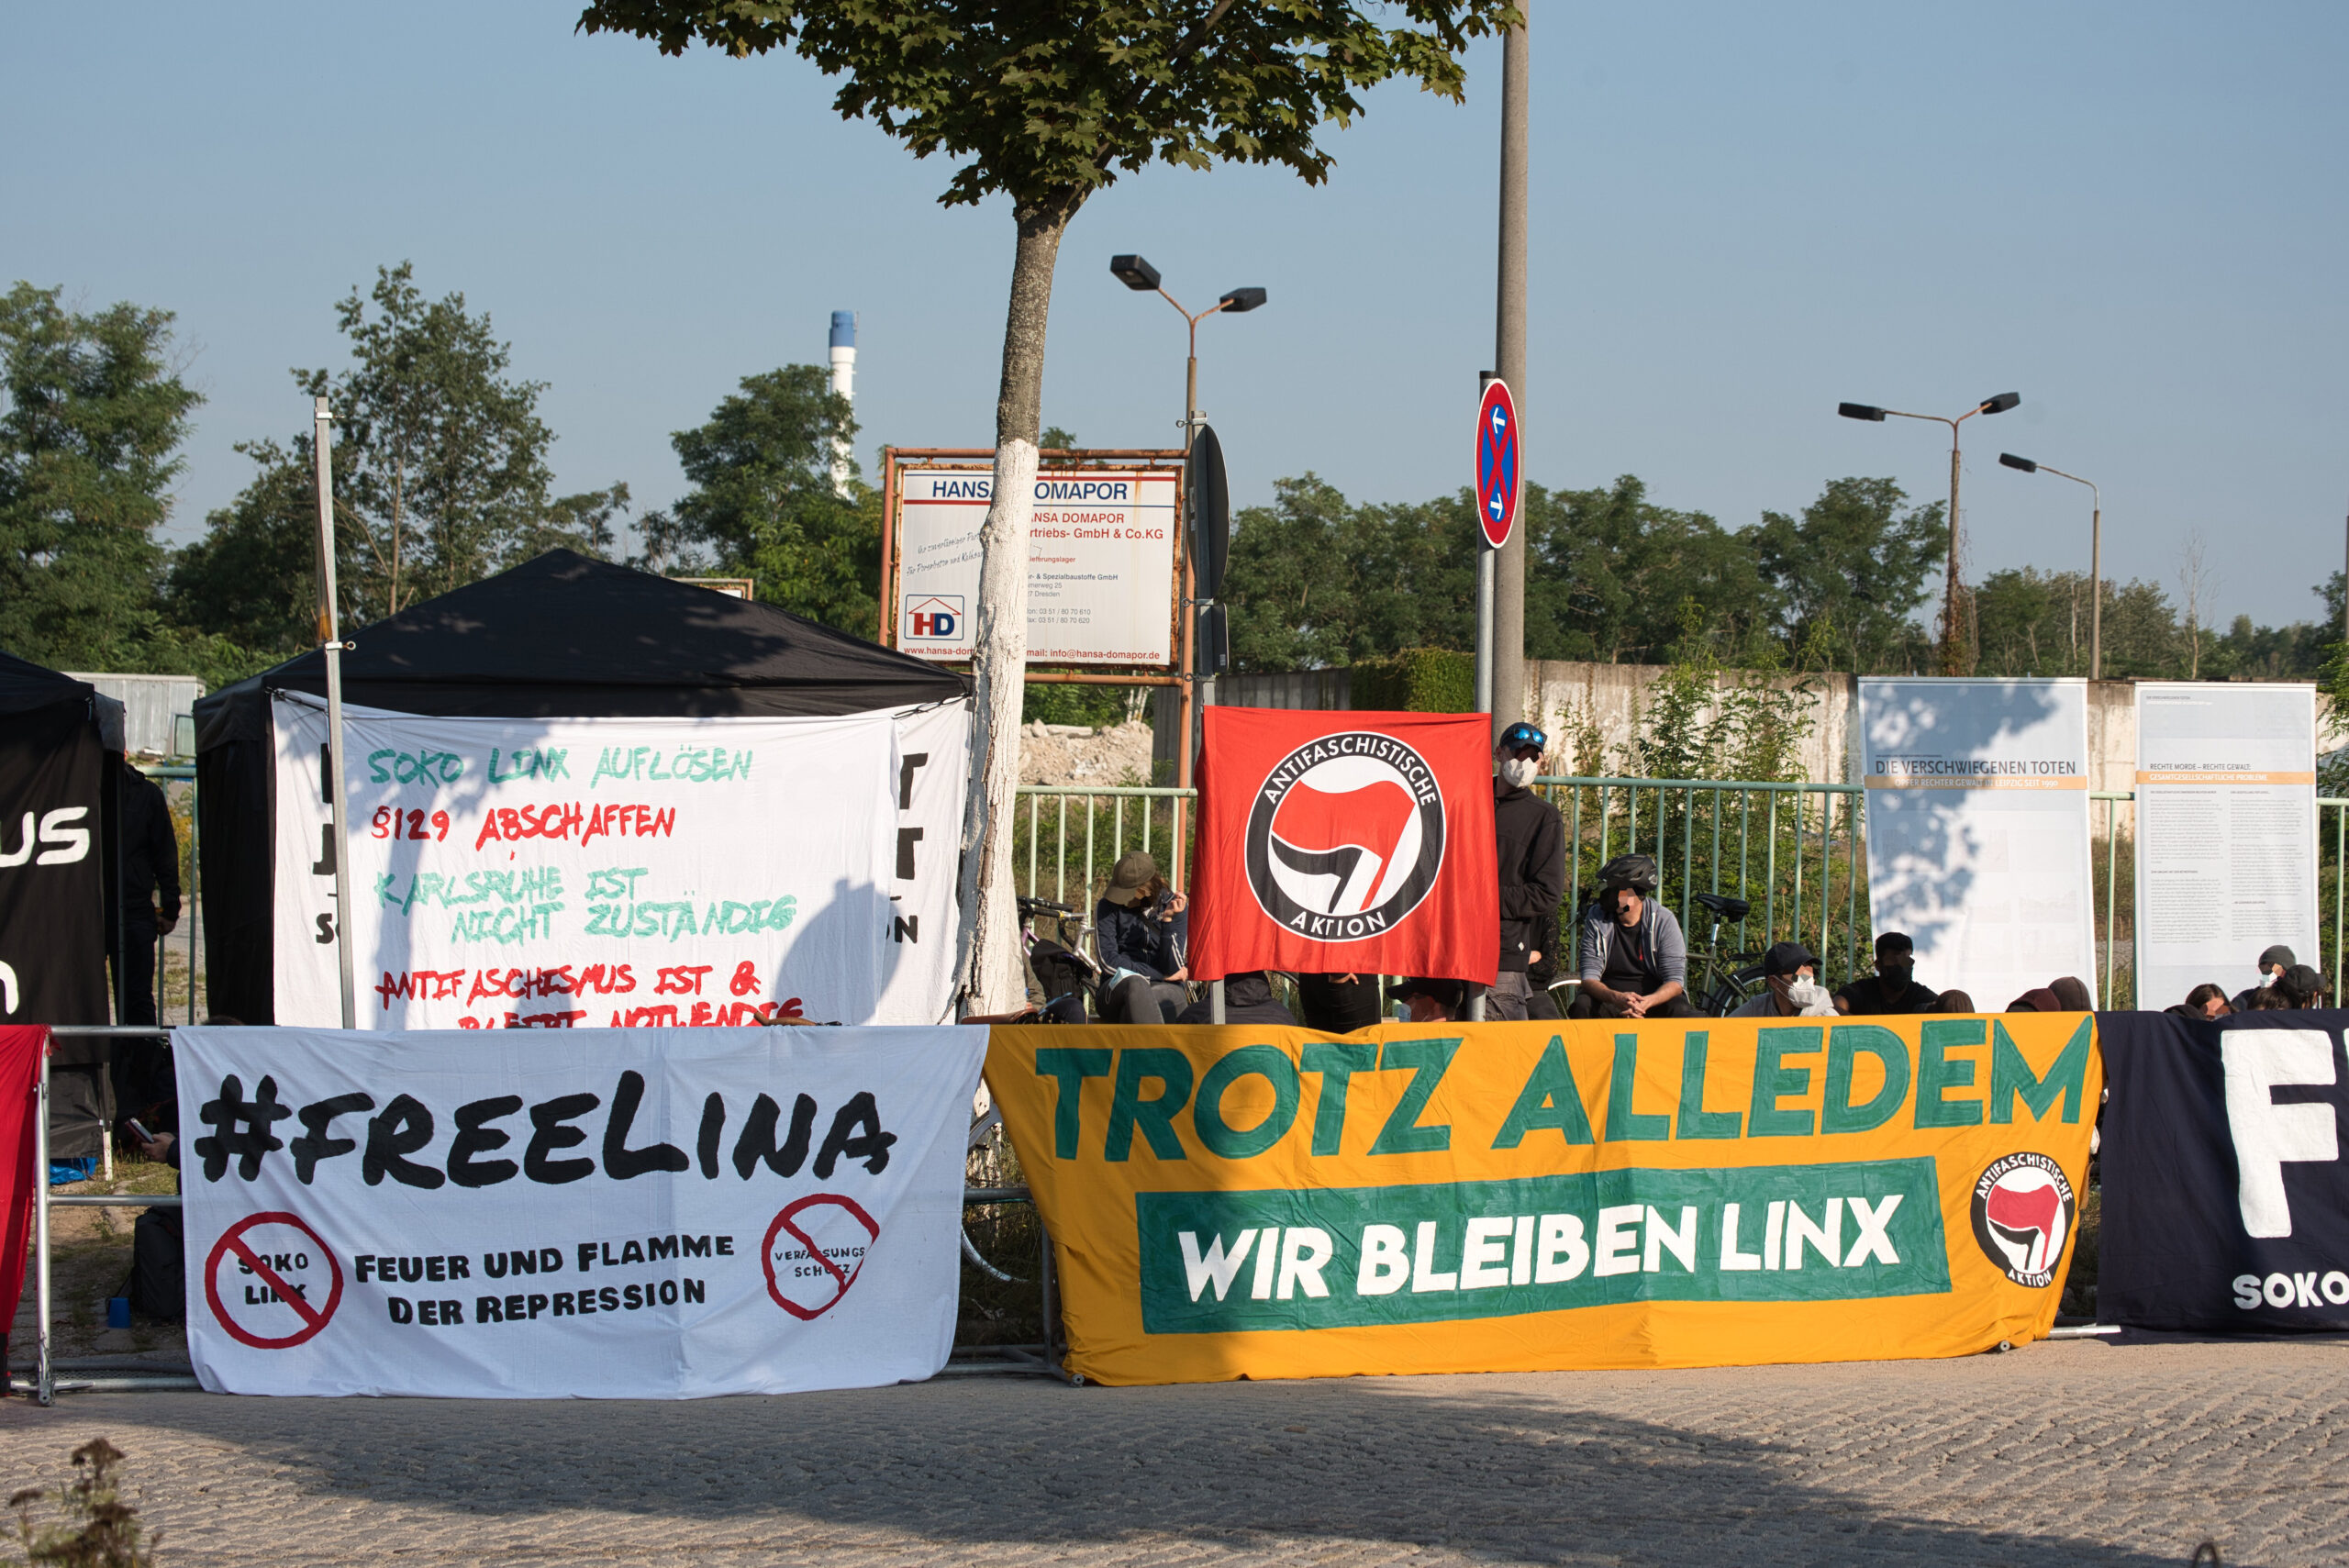 You are currently viewing Das § 129-Verfahren gegen 4 Antifaschist:innen in Dresden